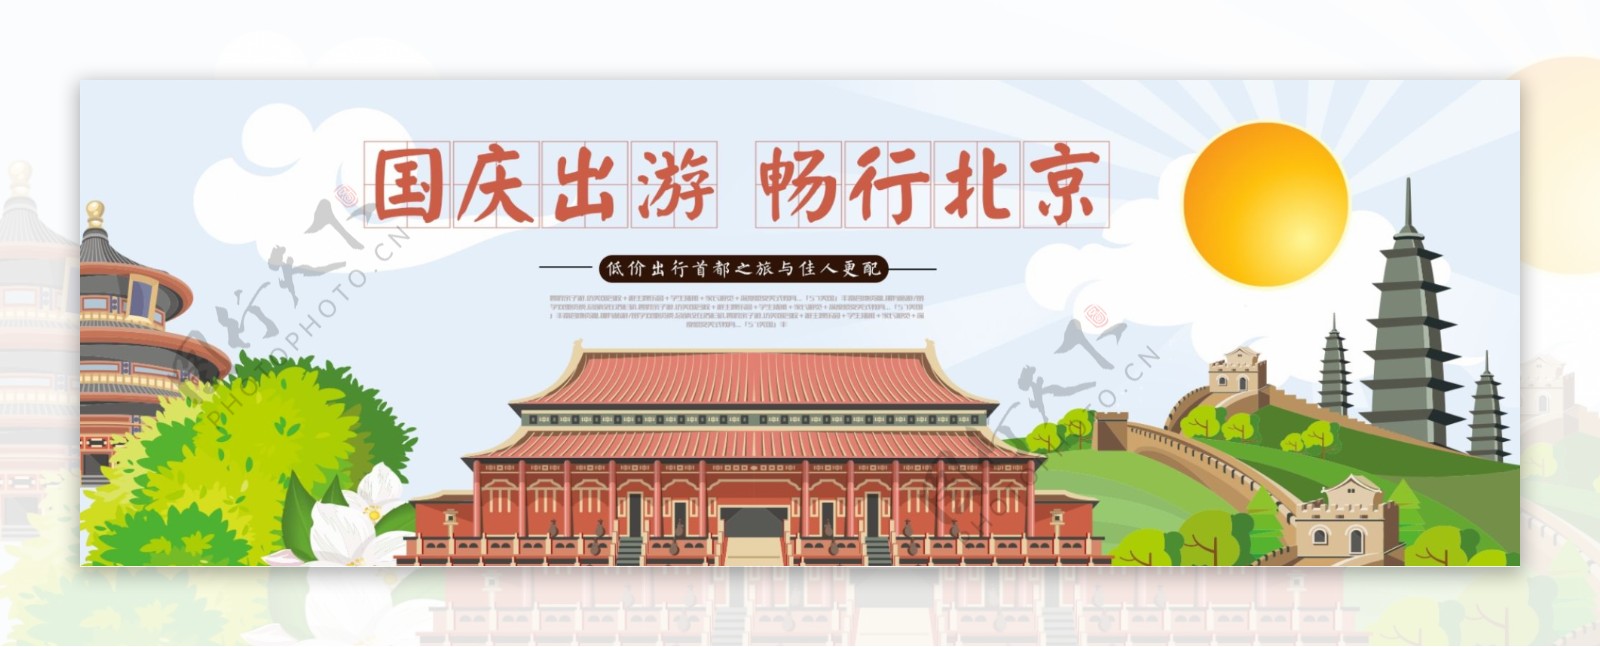 电商淘宝天猫国庆节出游季旅游促销海报banner模板北京